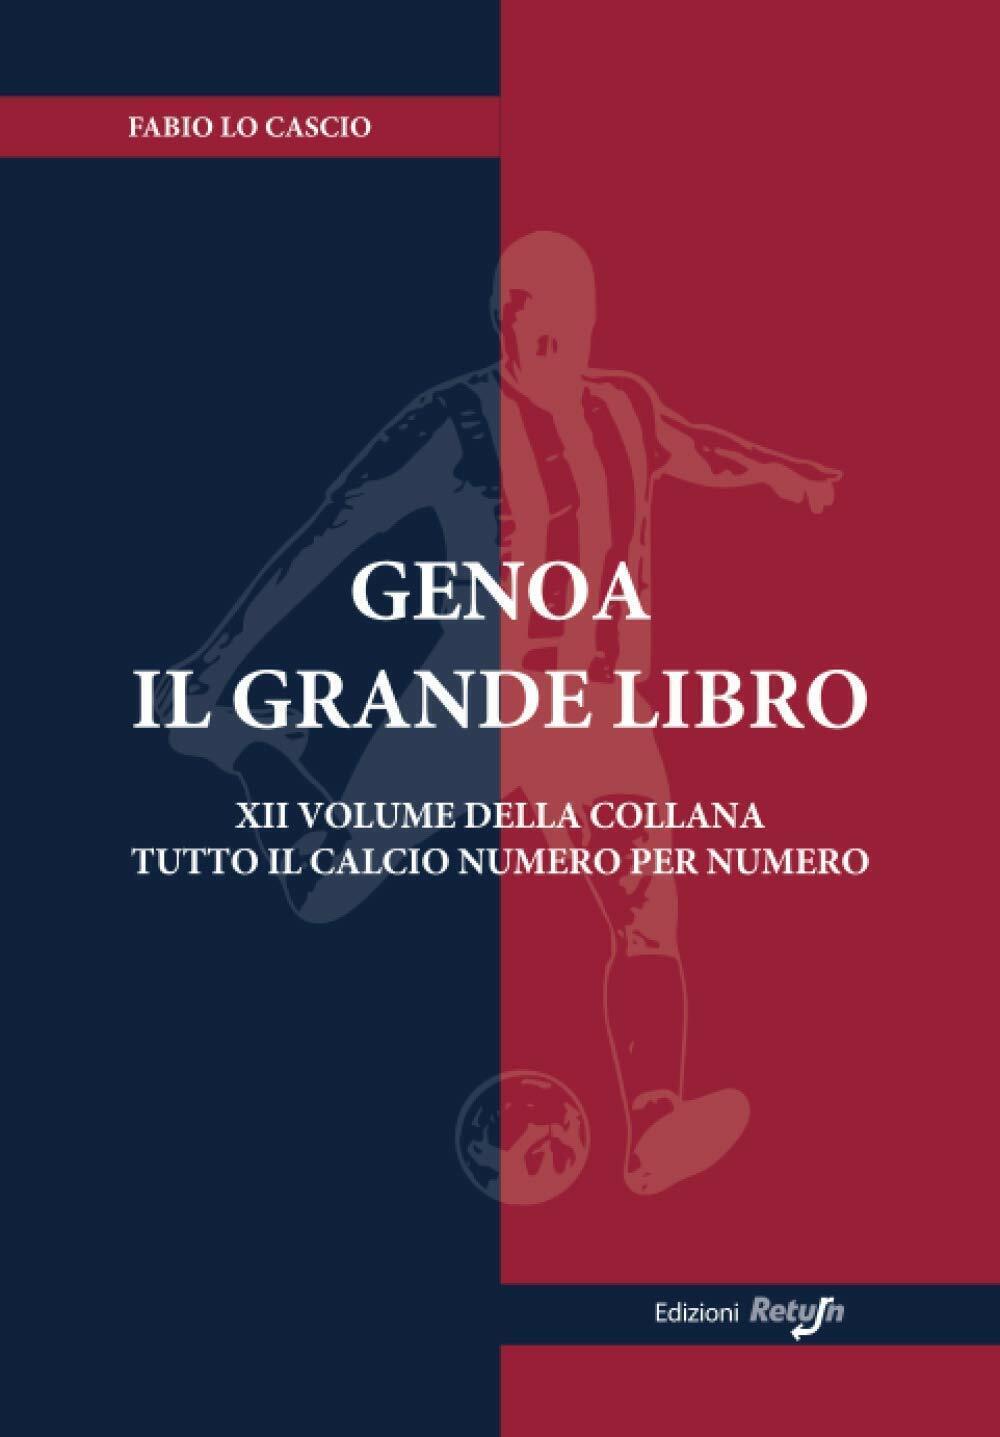 Genoa il Grande Libro - Fabio Lo Cascio - Return, 2019